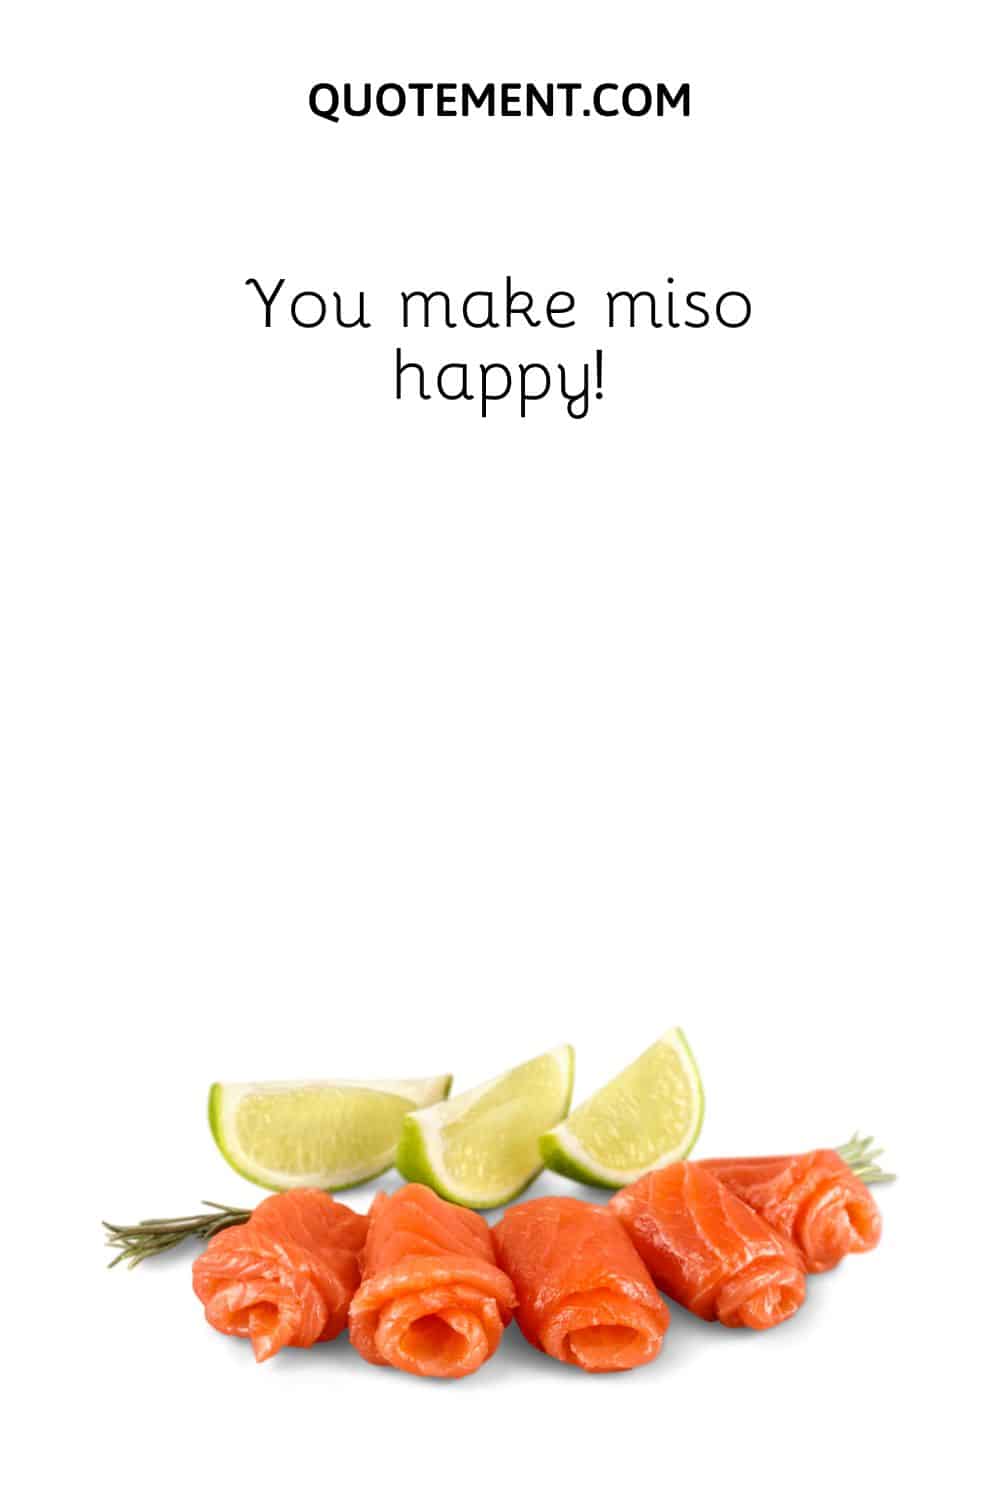 You make miso happy!